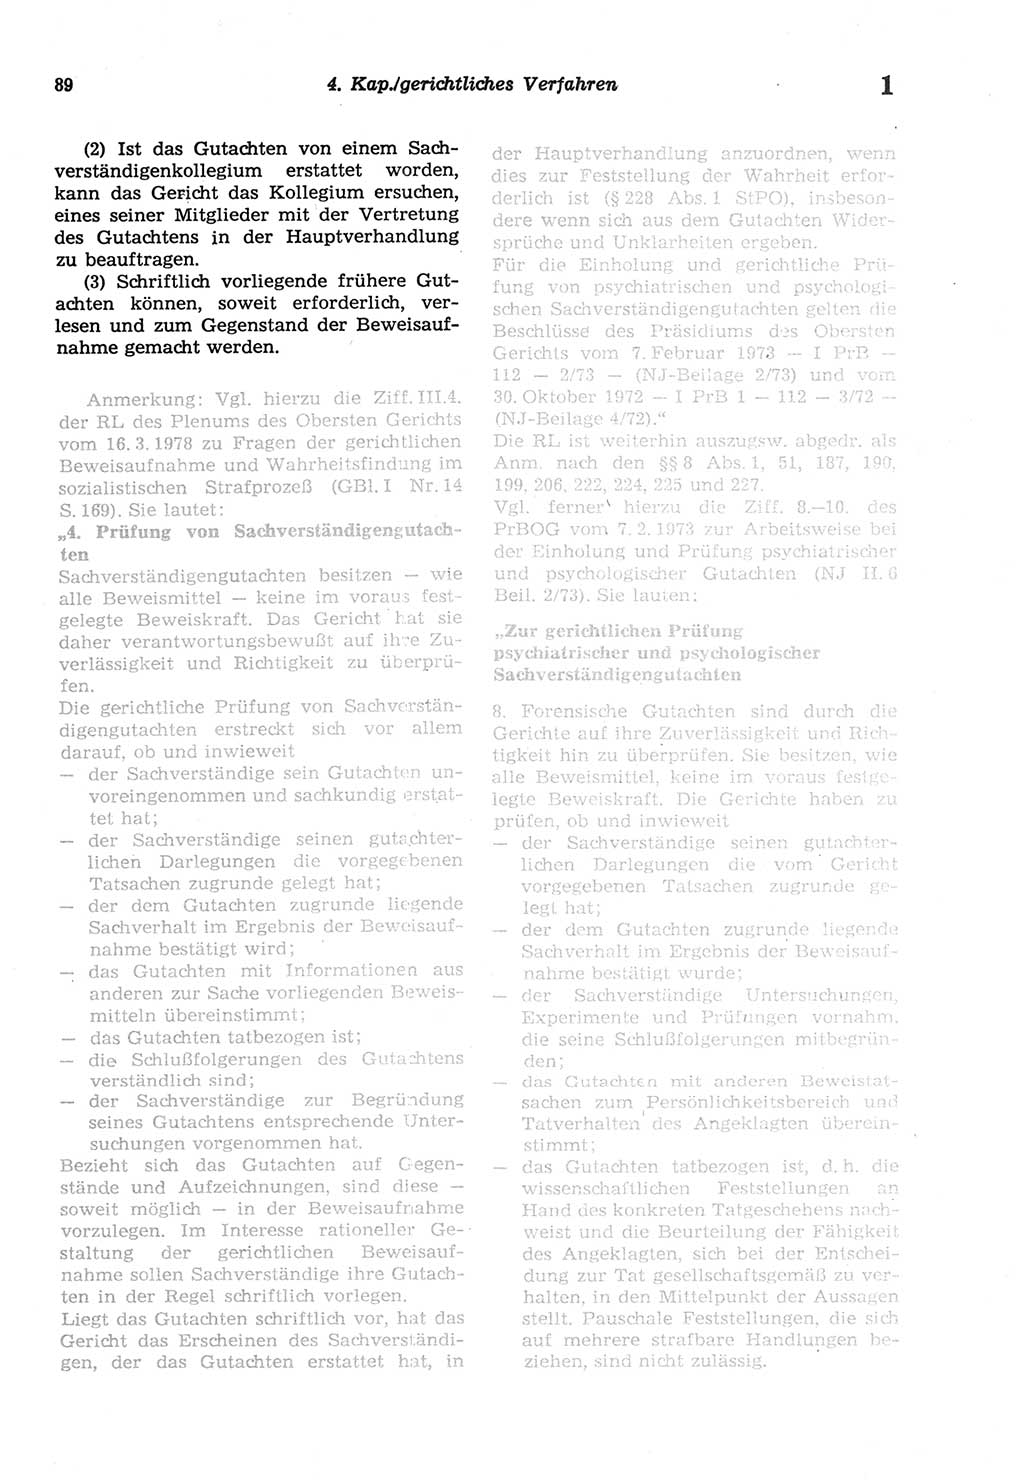 Strafprozeßordnung (StPO) der Deutschen Demokratischen Republik (DDR) sowie angrenzende Gesetze und Bestimmungen 1977, Seite 89 (StPO DDR Ges. Best. 1977, S. 89)